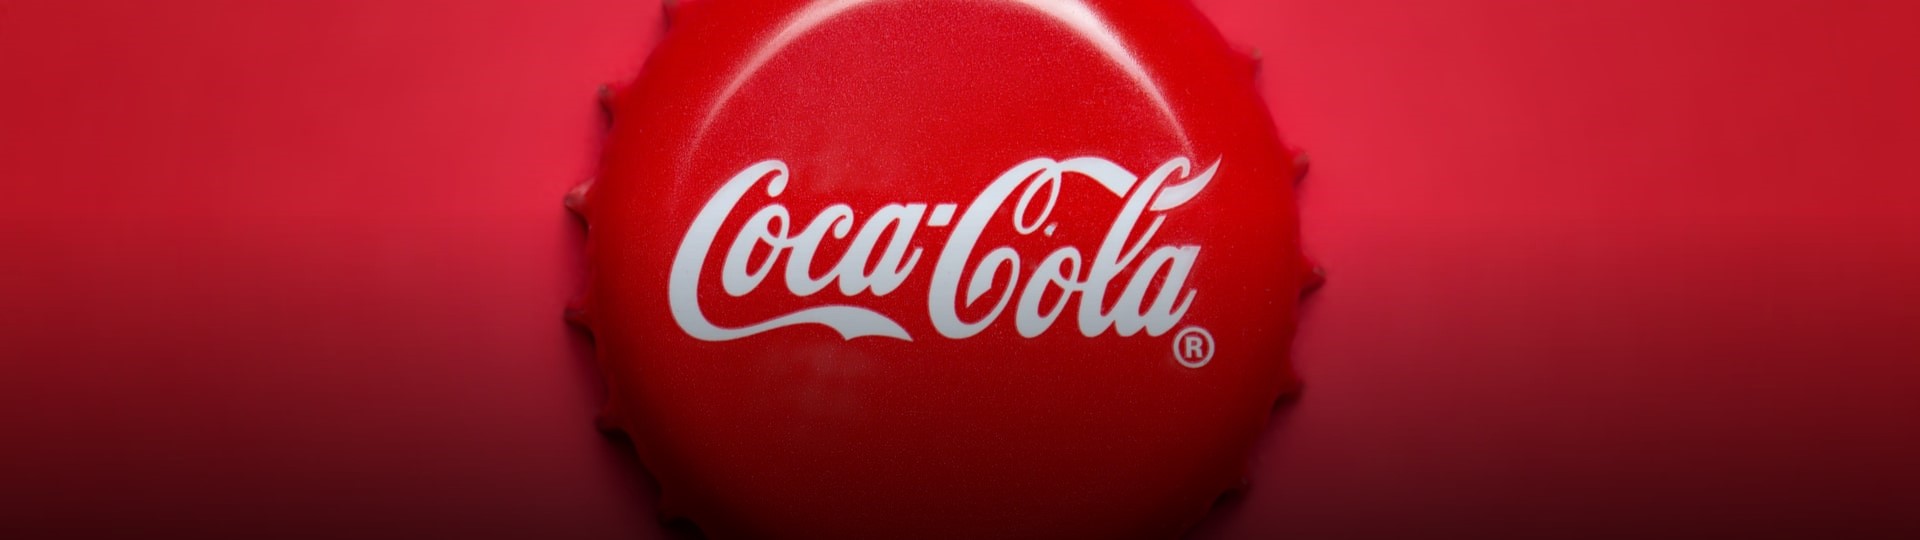 Evropská komise zahájila vyšetřování společnosti Coca-Cola